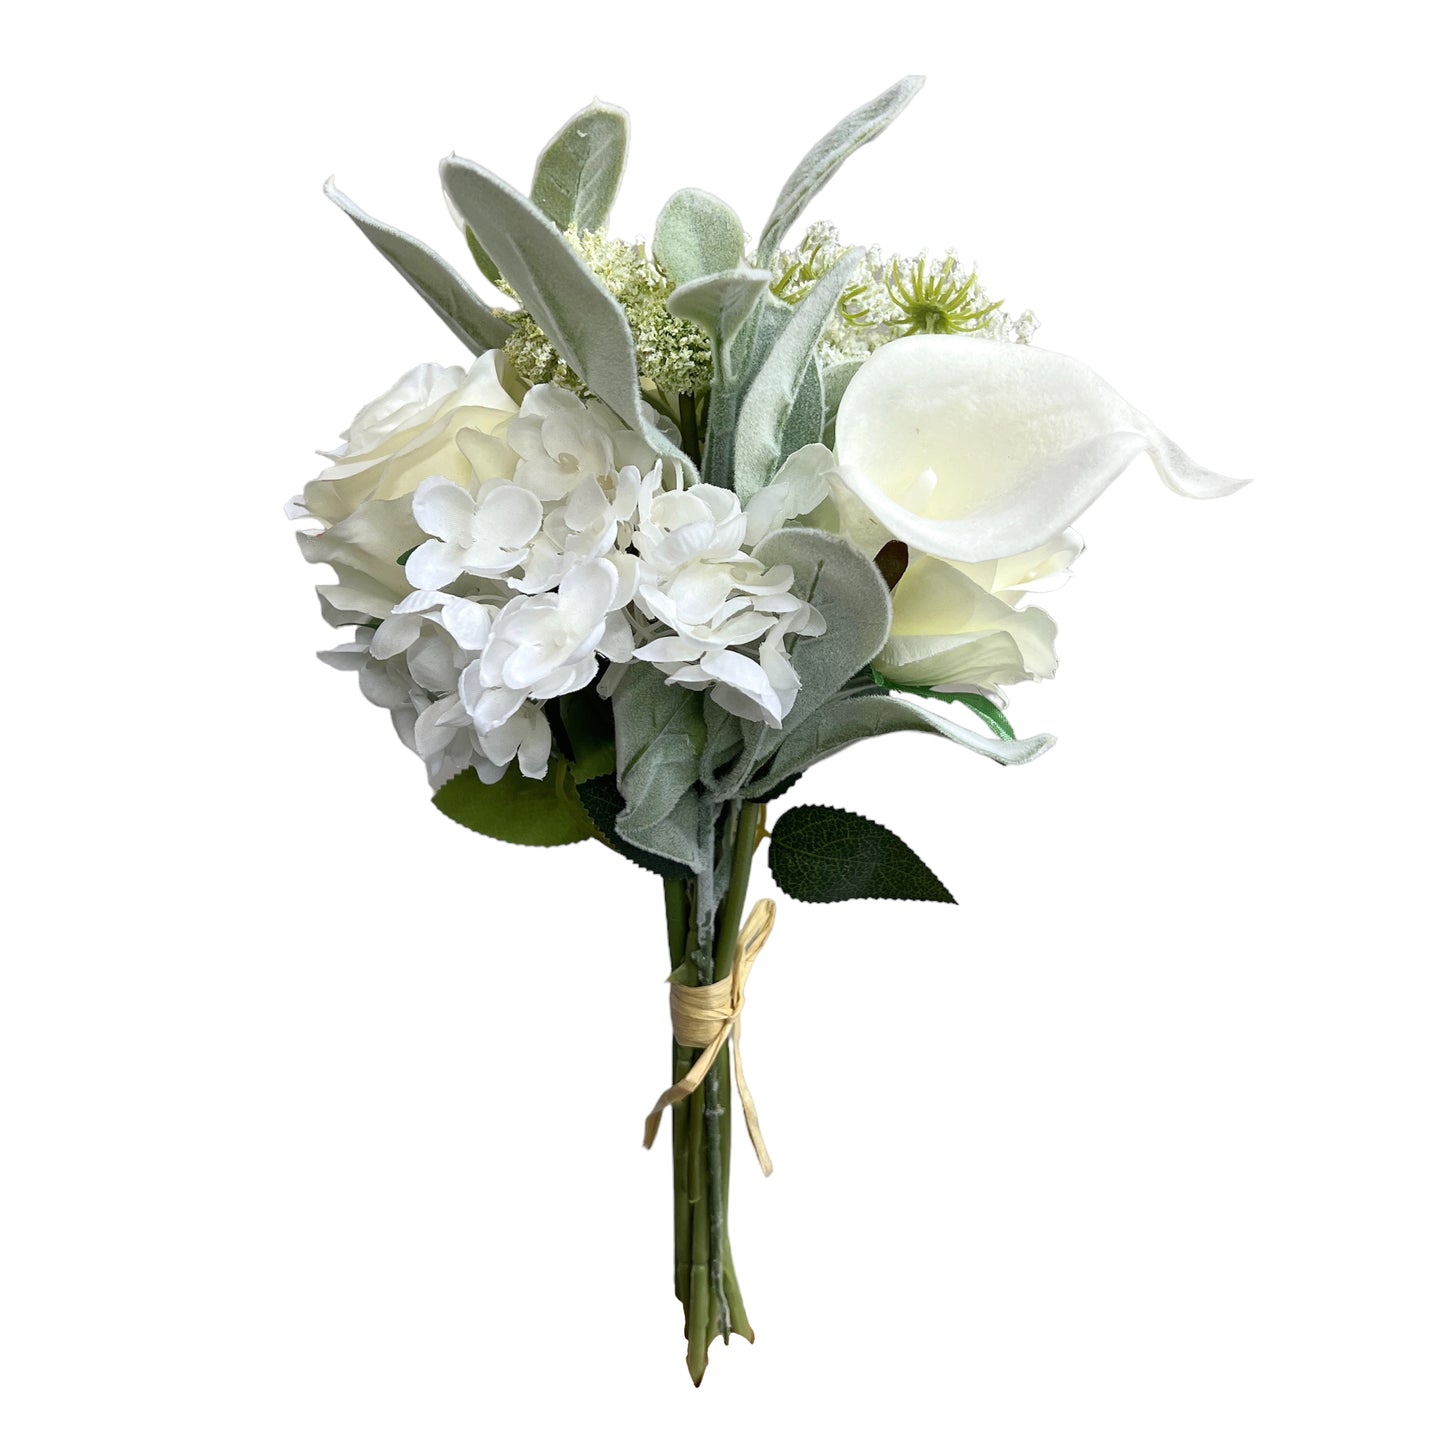 Faux Calla Lily, Rose, and Hydrangea Flower Bouquet - Elegant Artificial Floral Arrangement